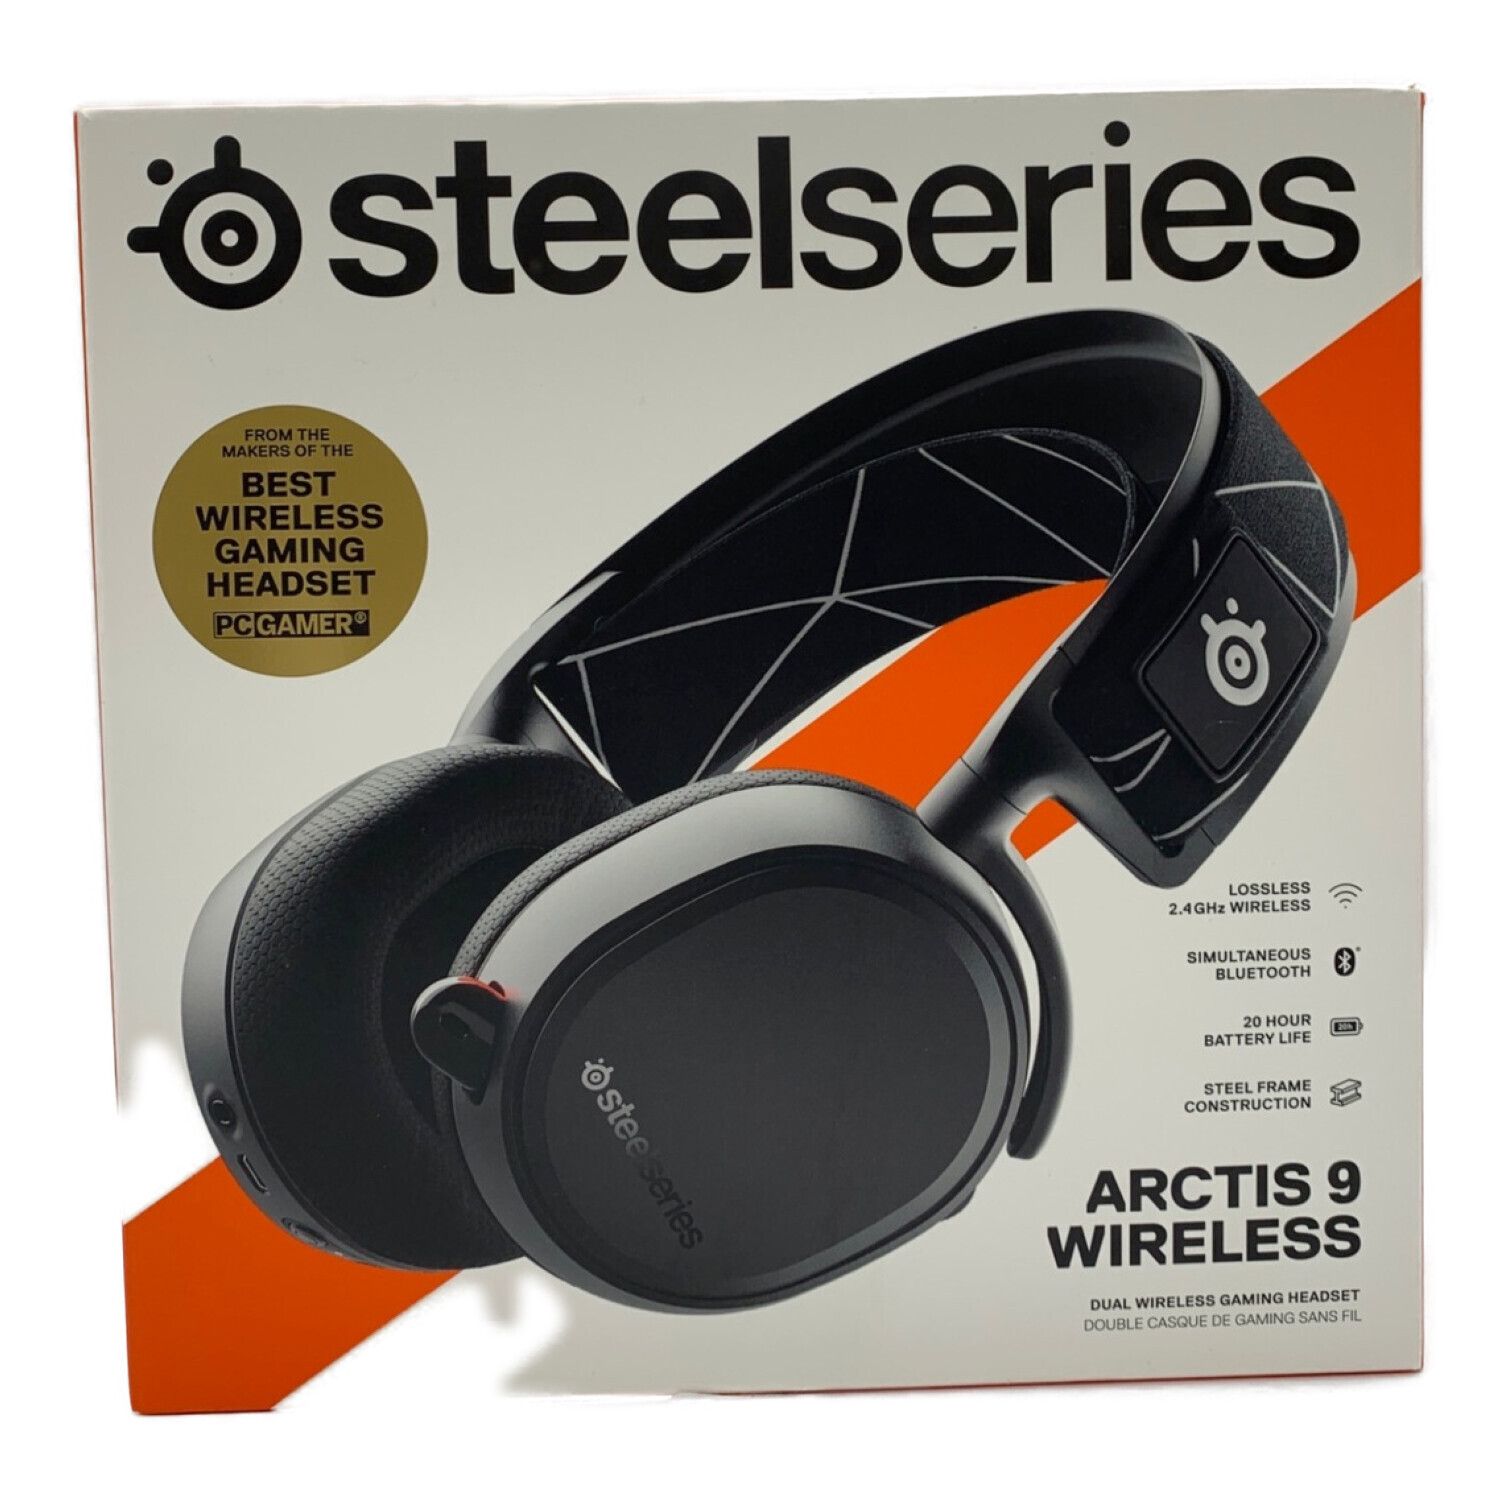 steelseries (スティールシリーズ) ゲーミングヘッドセット ARCTIS9